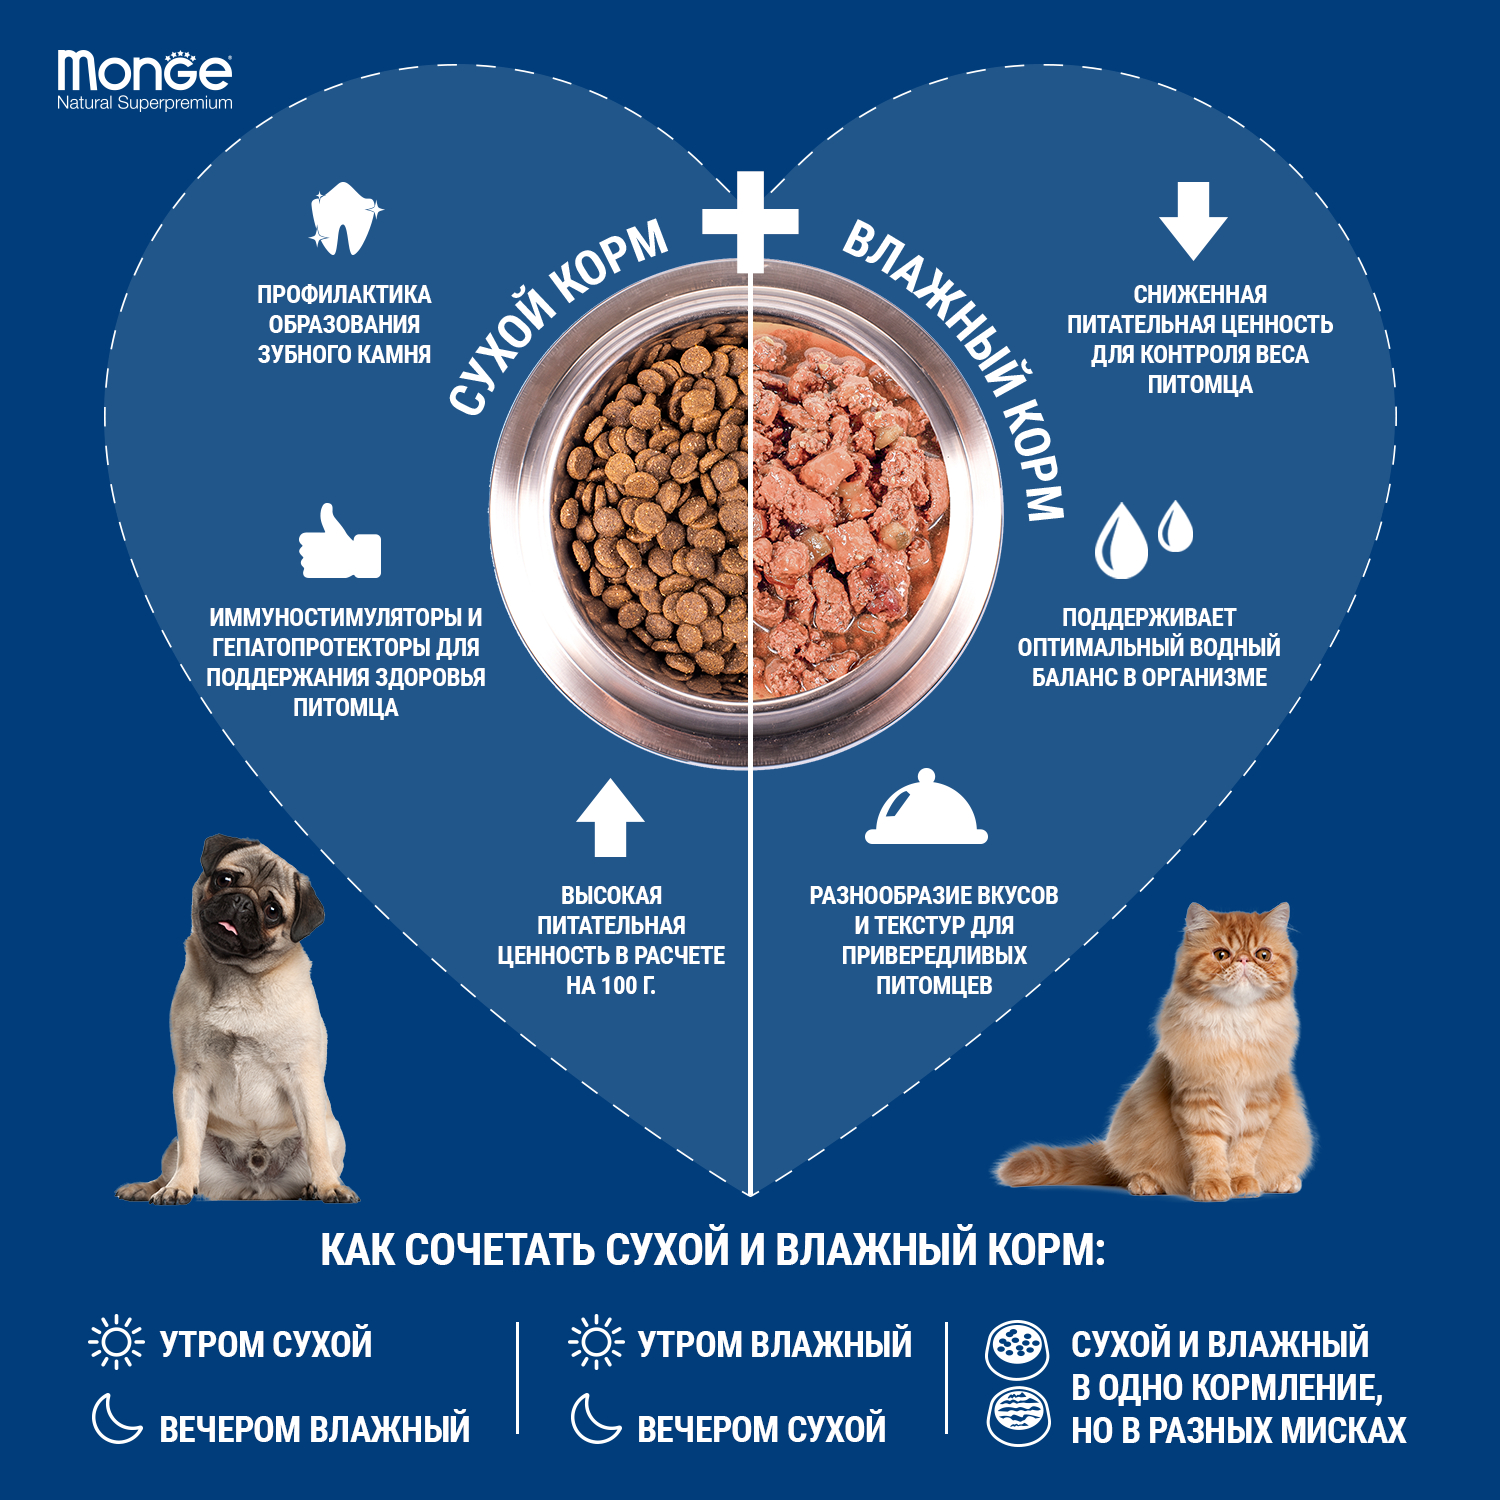 Сухой корм Monge Dog Speciality Line Monoprotein для взрослых собак всех пород, из лосося с рисом 2,5 кг